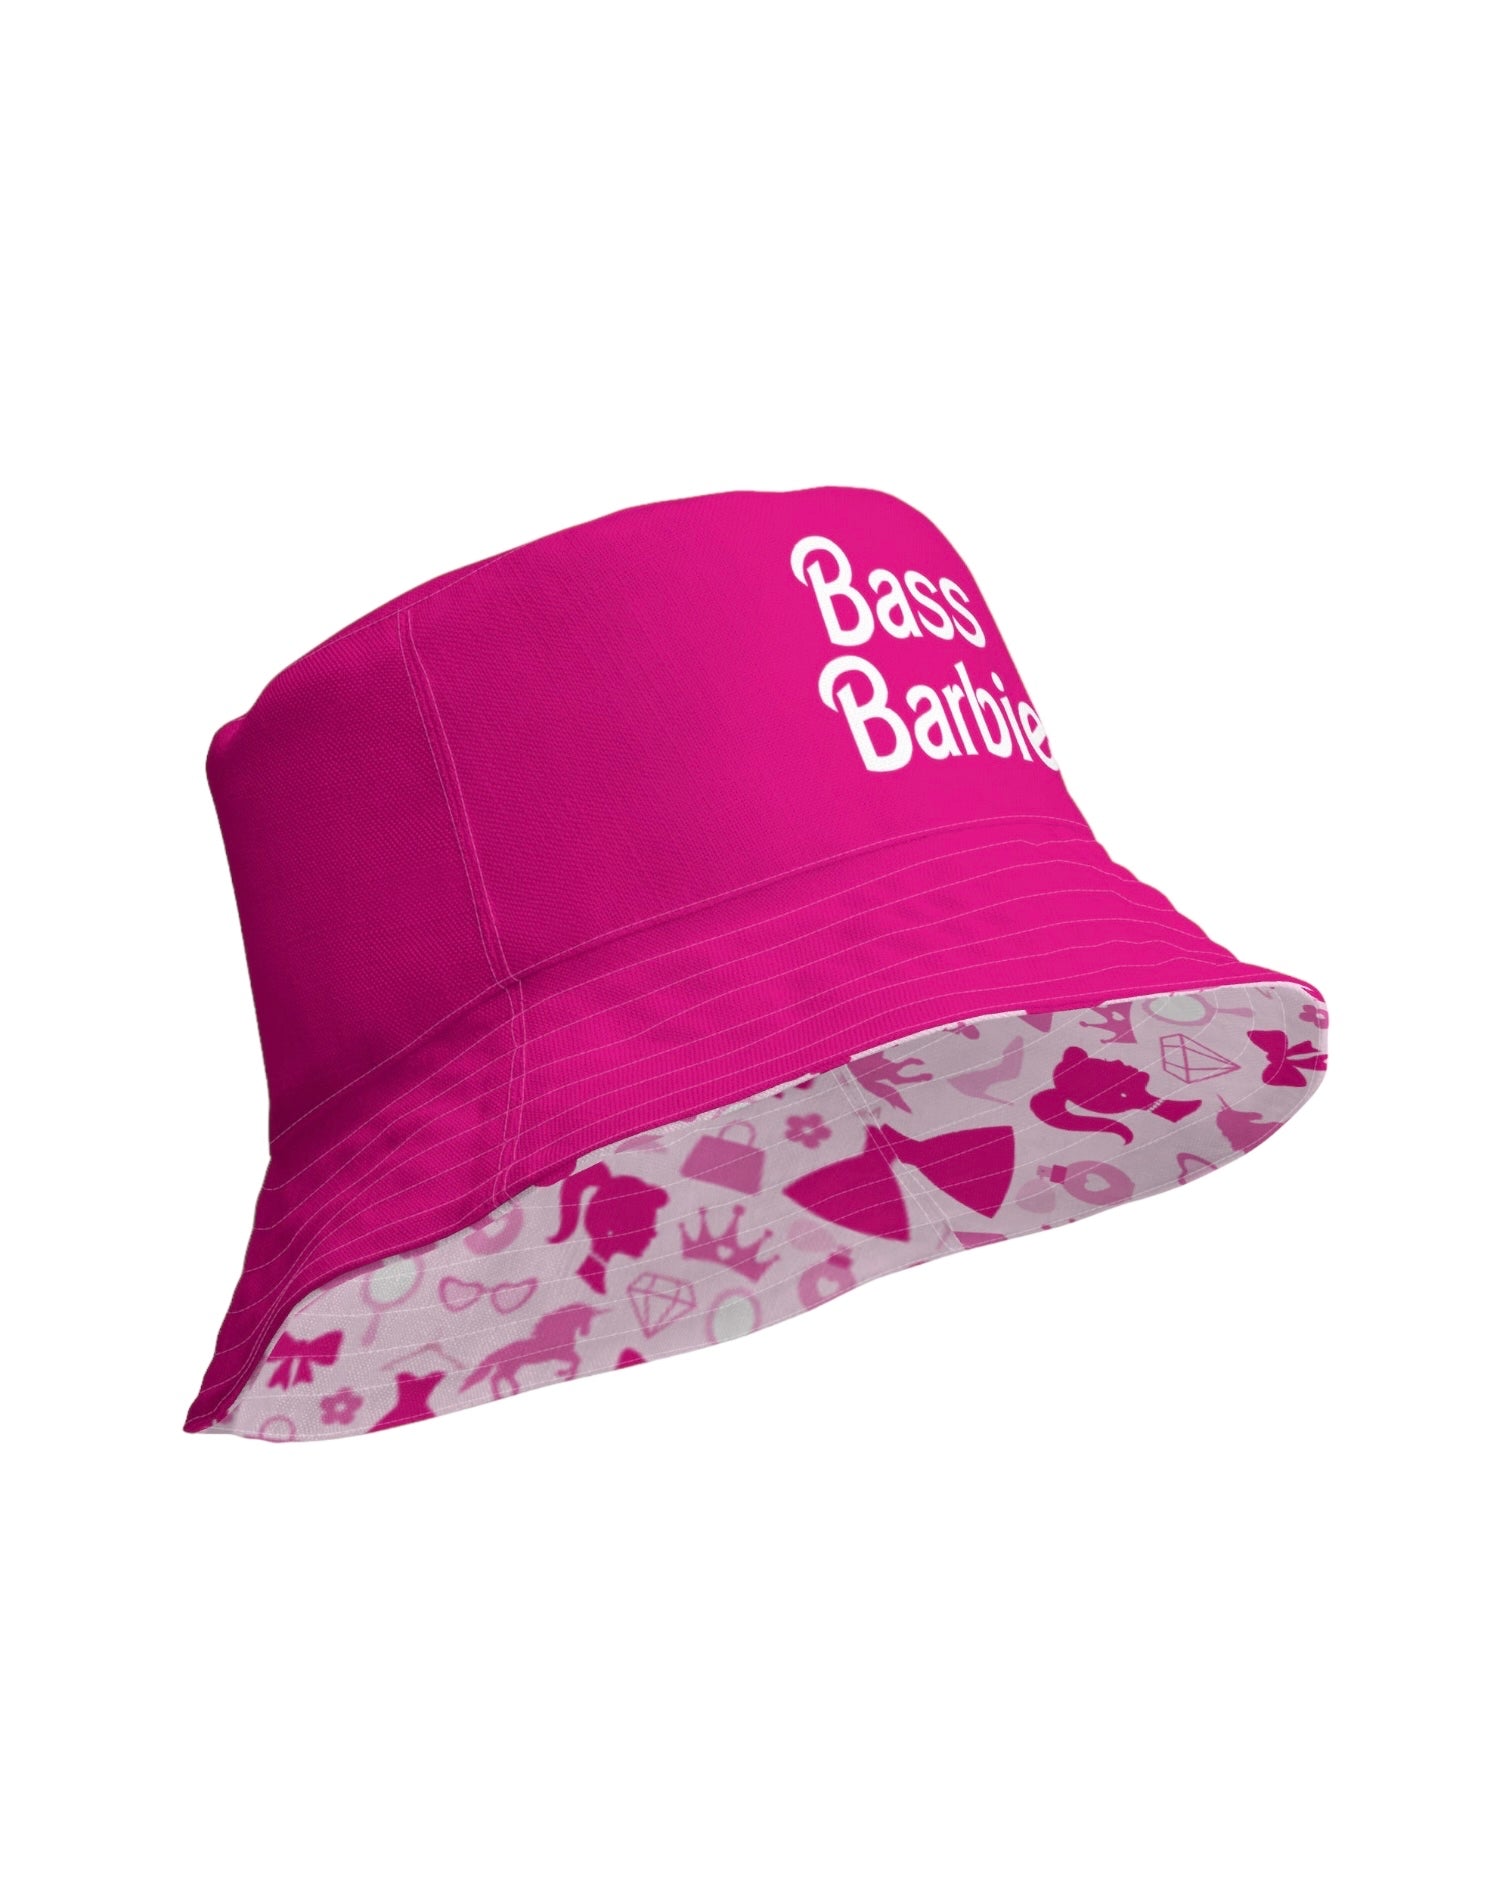 Bass Barbie Reversible Bucket Hat